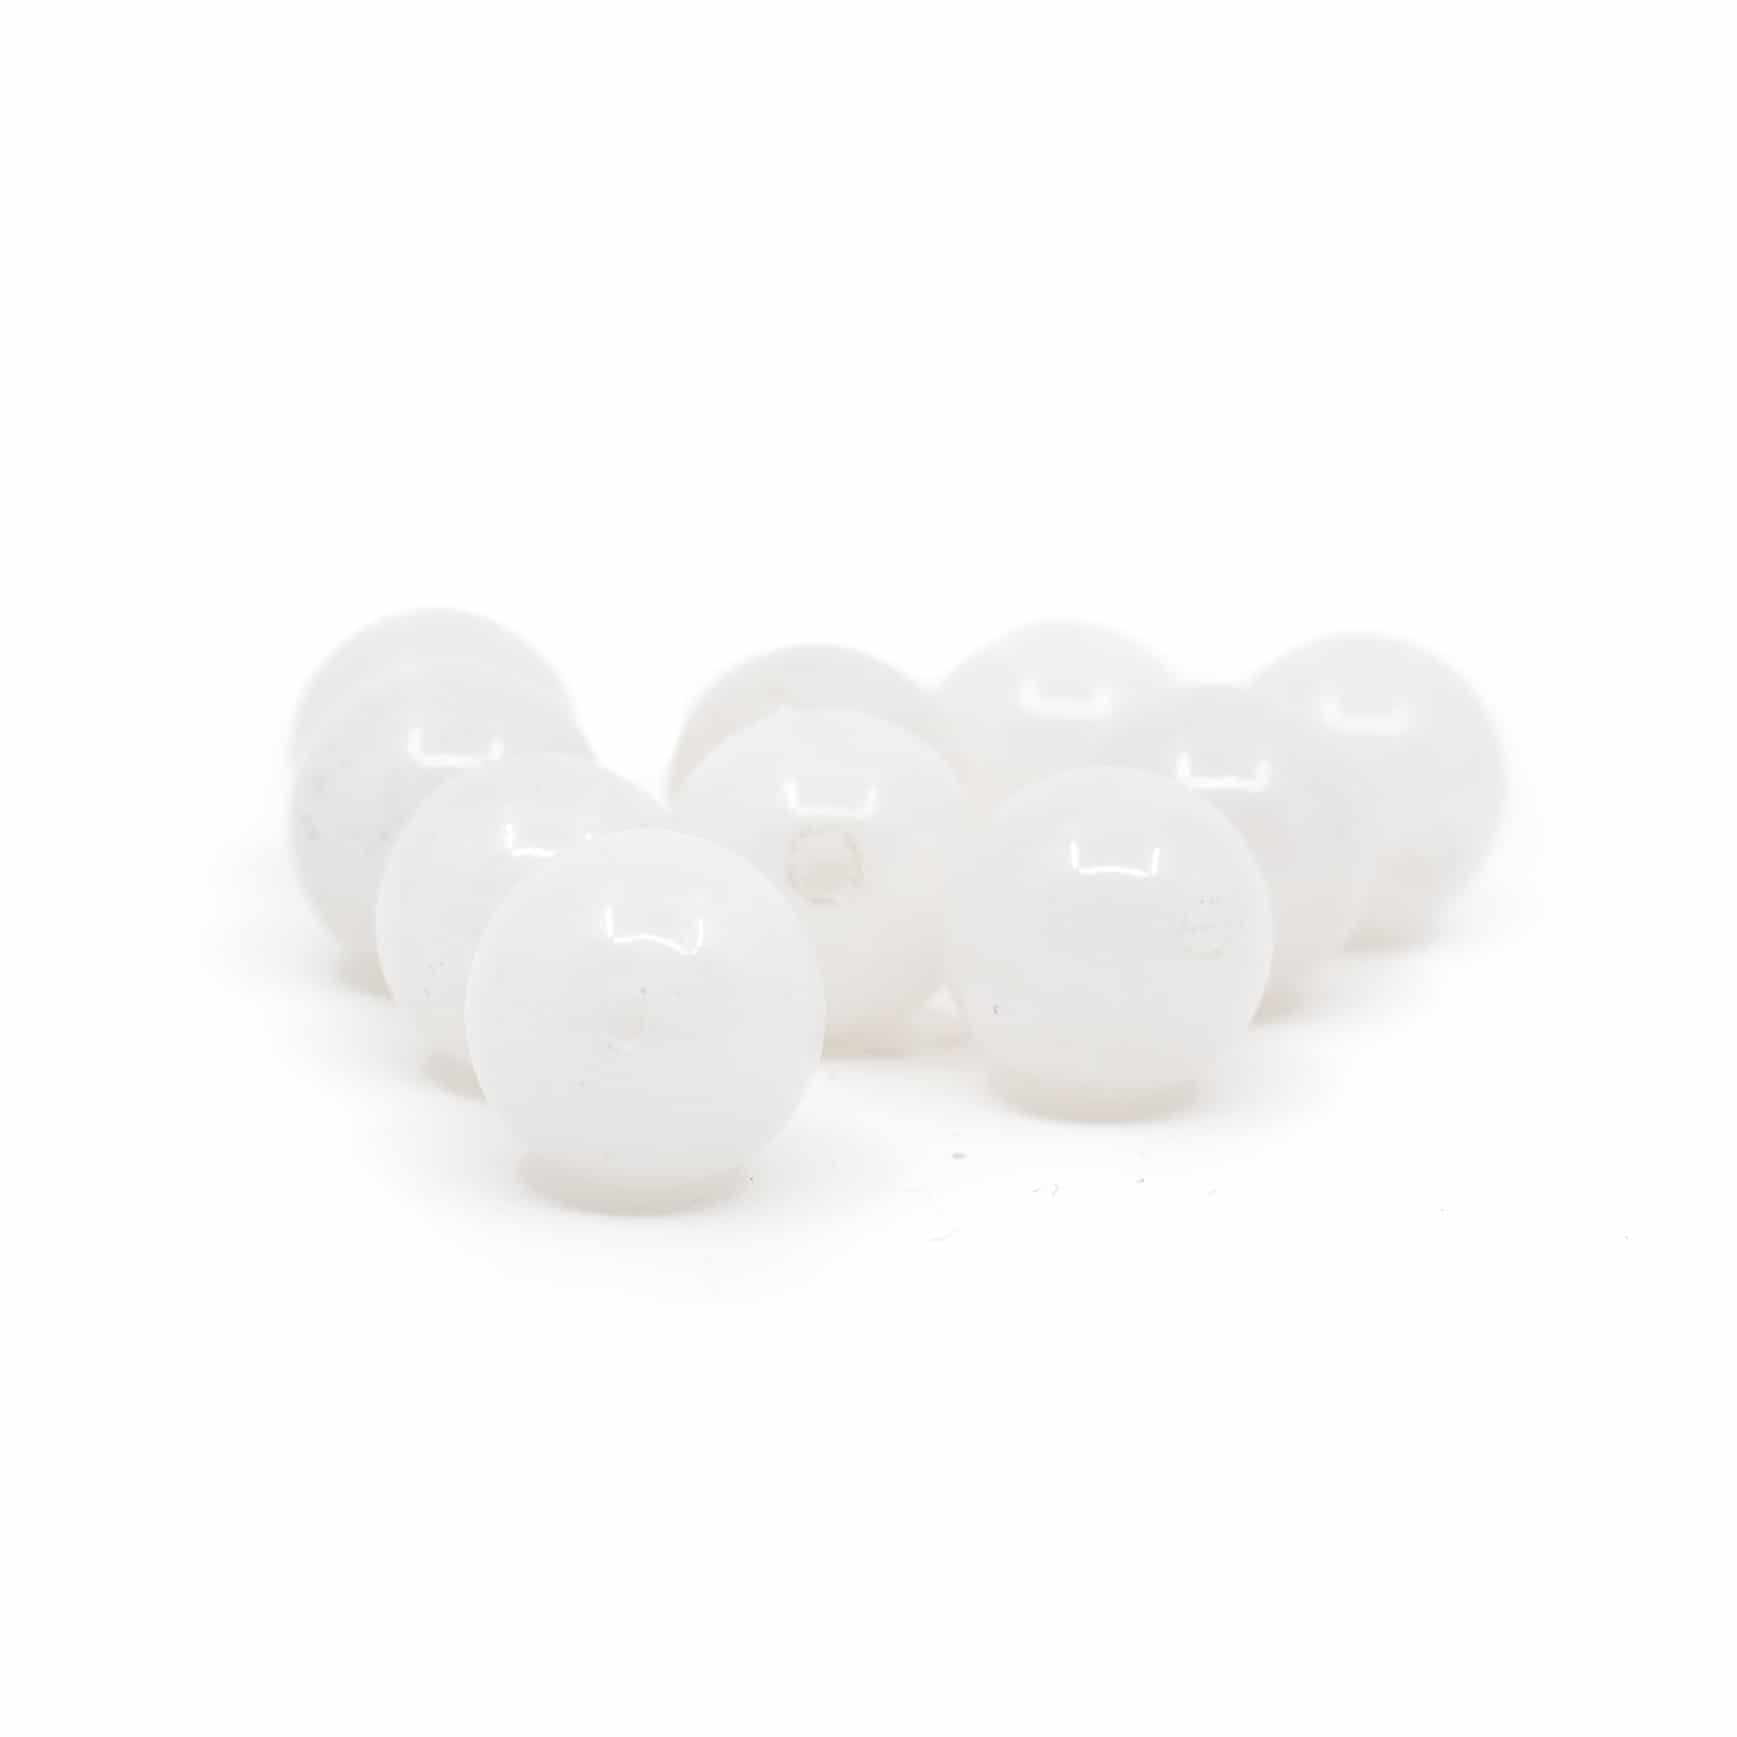 Cuentas Sueltas de Jade Blanco - 10 piezas (10 mm)